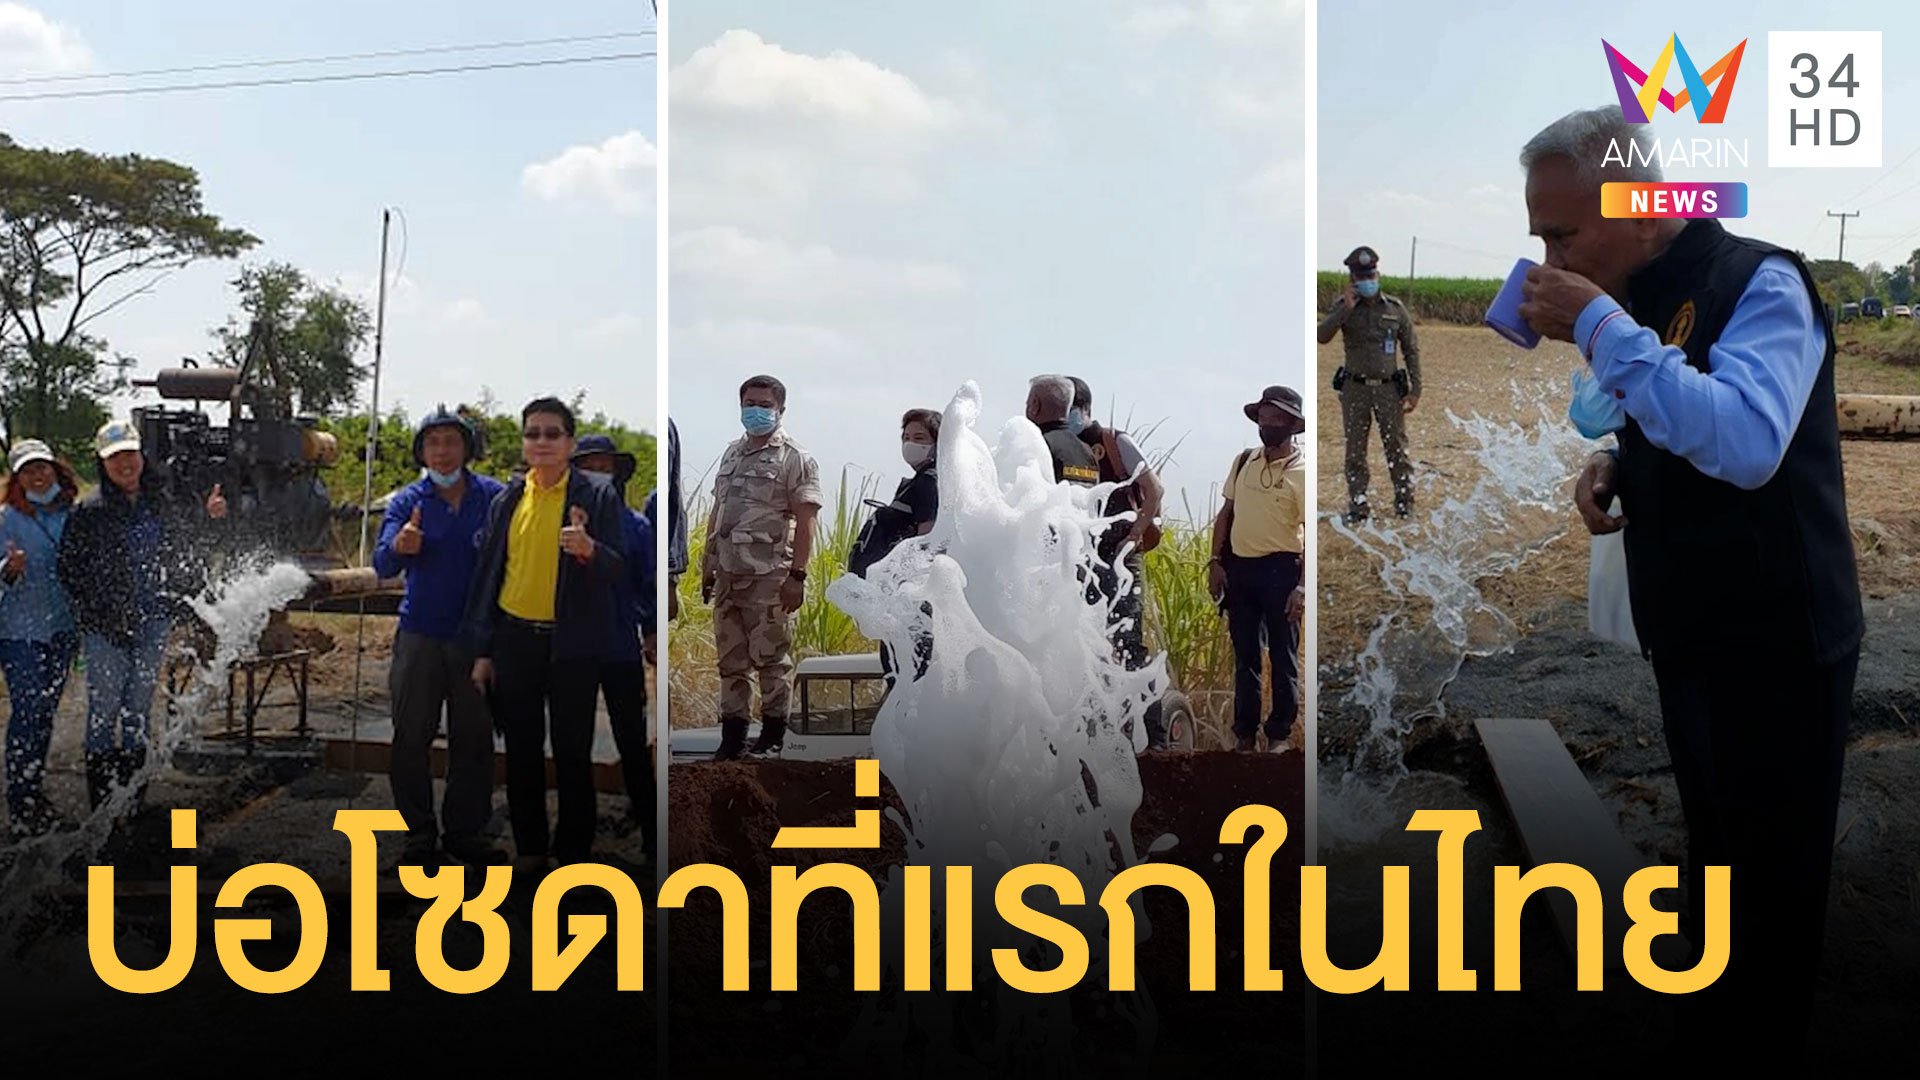 บ่อน้ำผุดคล้ายโซดาที่เมืองกาญจน์ เจอที่แรกในไทย | ข่าวอรุณอมรินทร์ | 11 ก.พ. 64 | AMARIN TVHD34